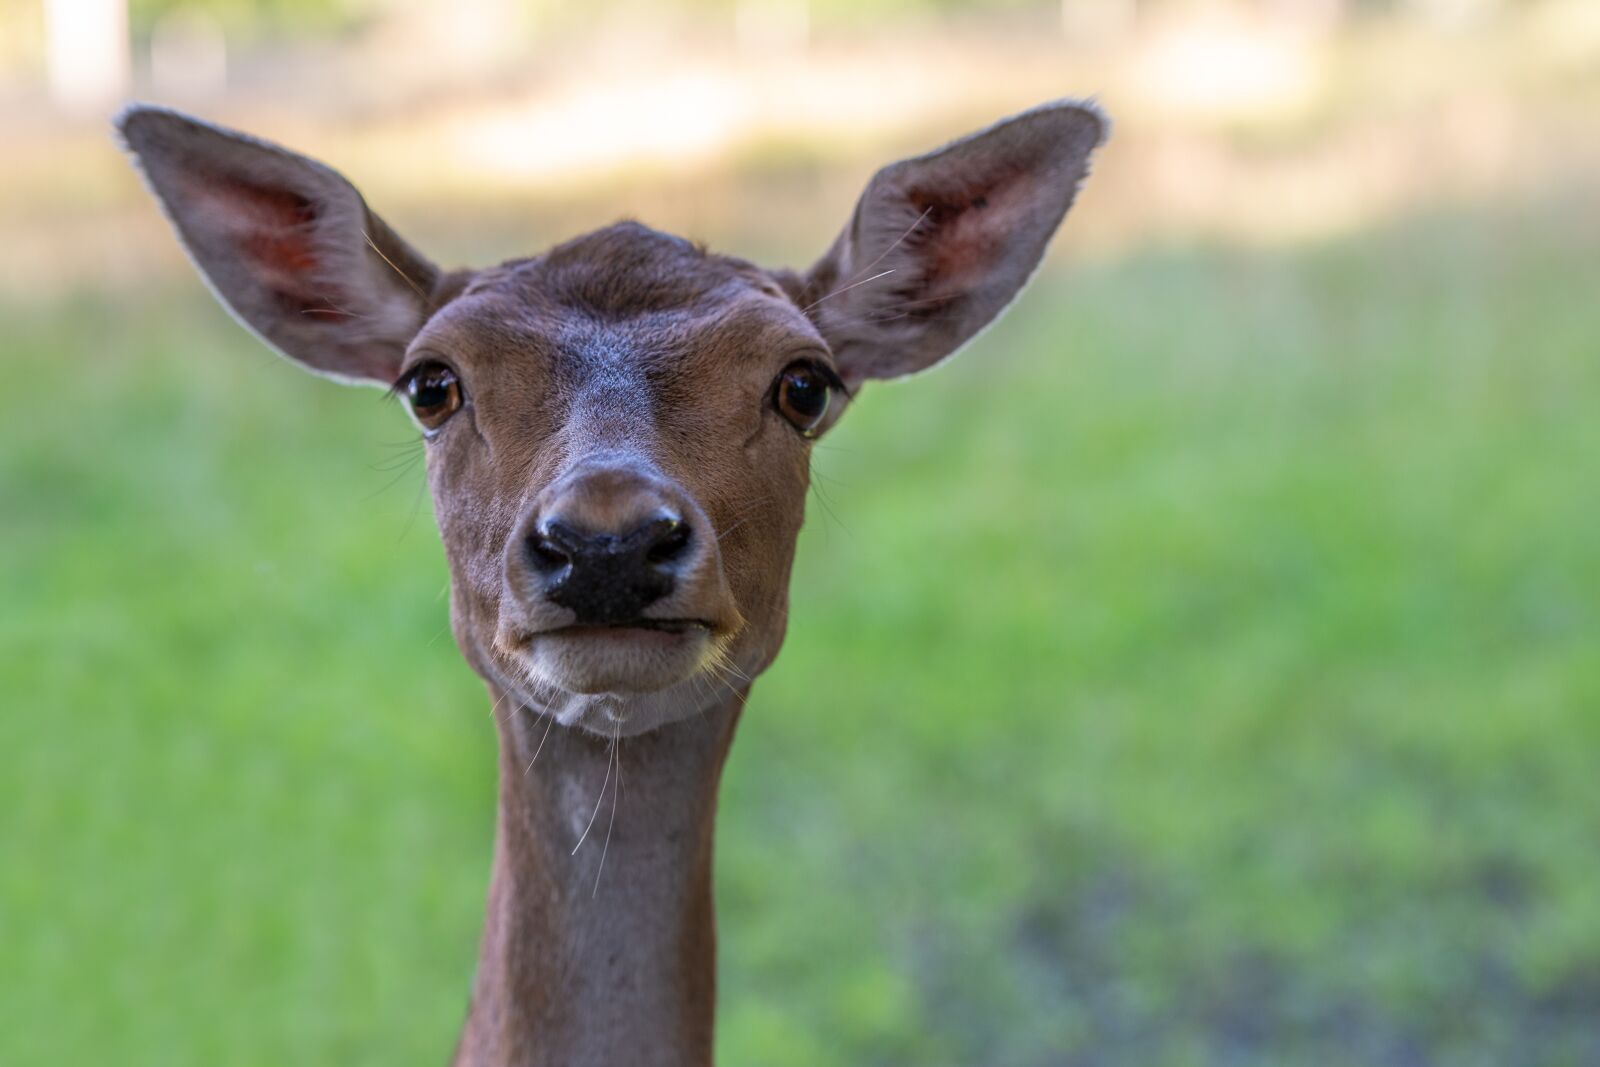 Nikon D800 sample photo. Deer calves, young deer photography